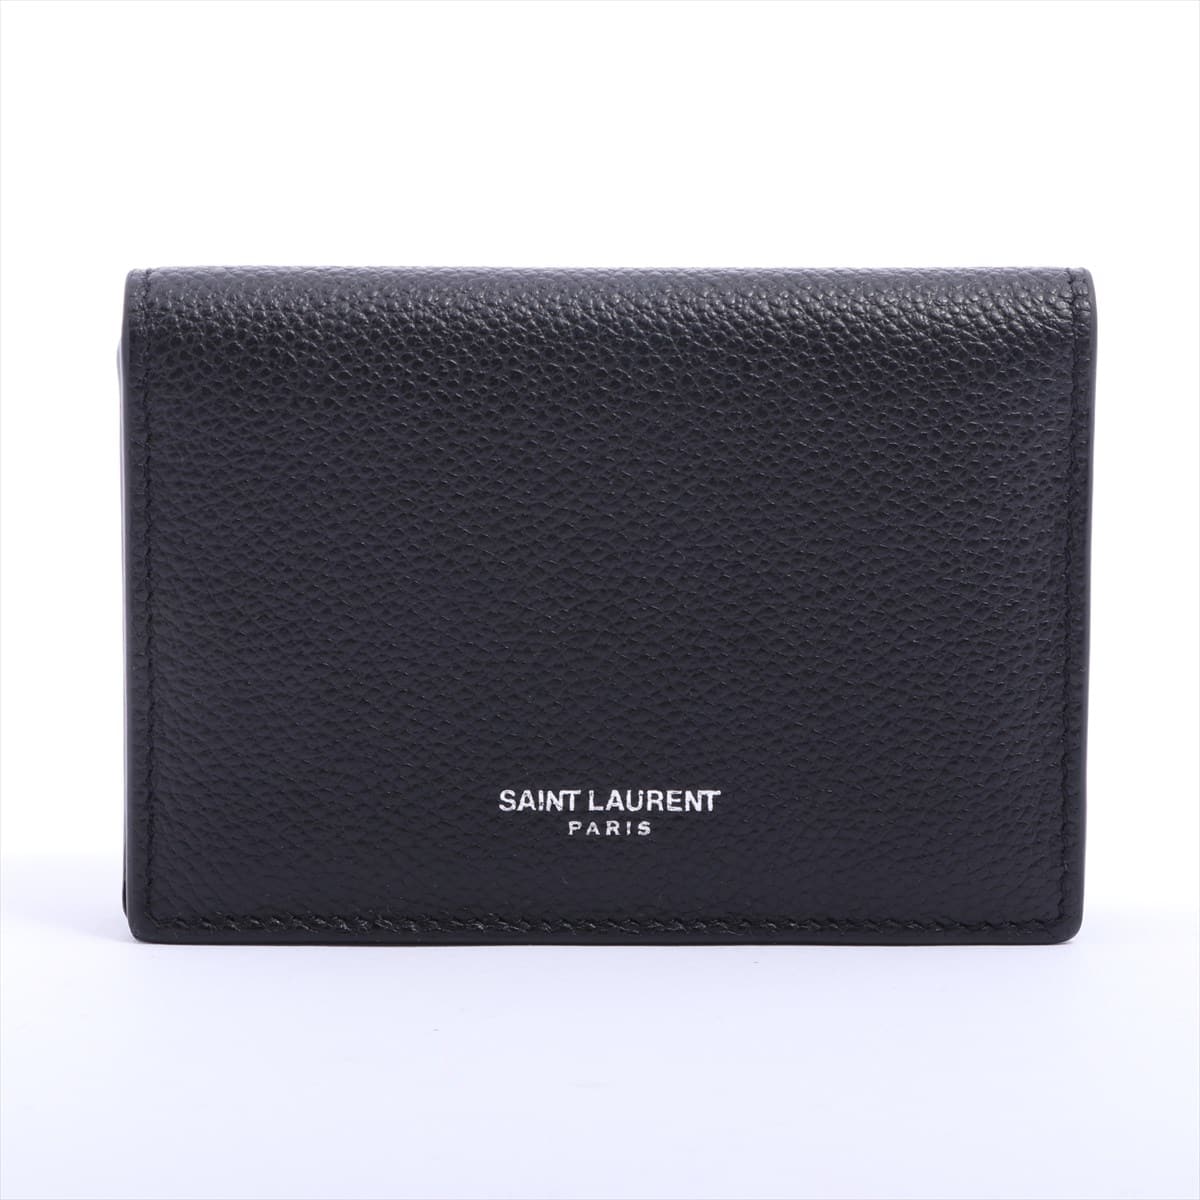 Saint Laurent Paris Leather Card case Black